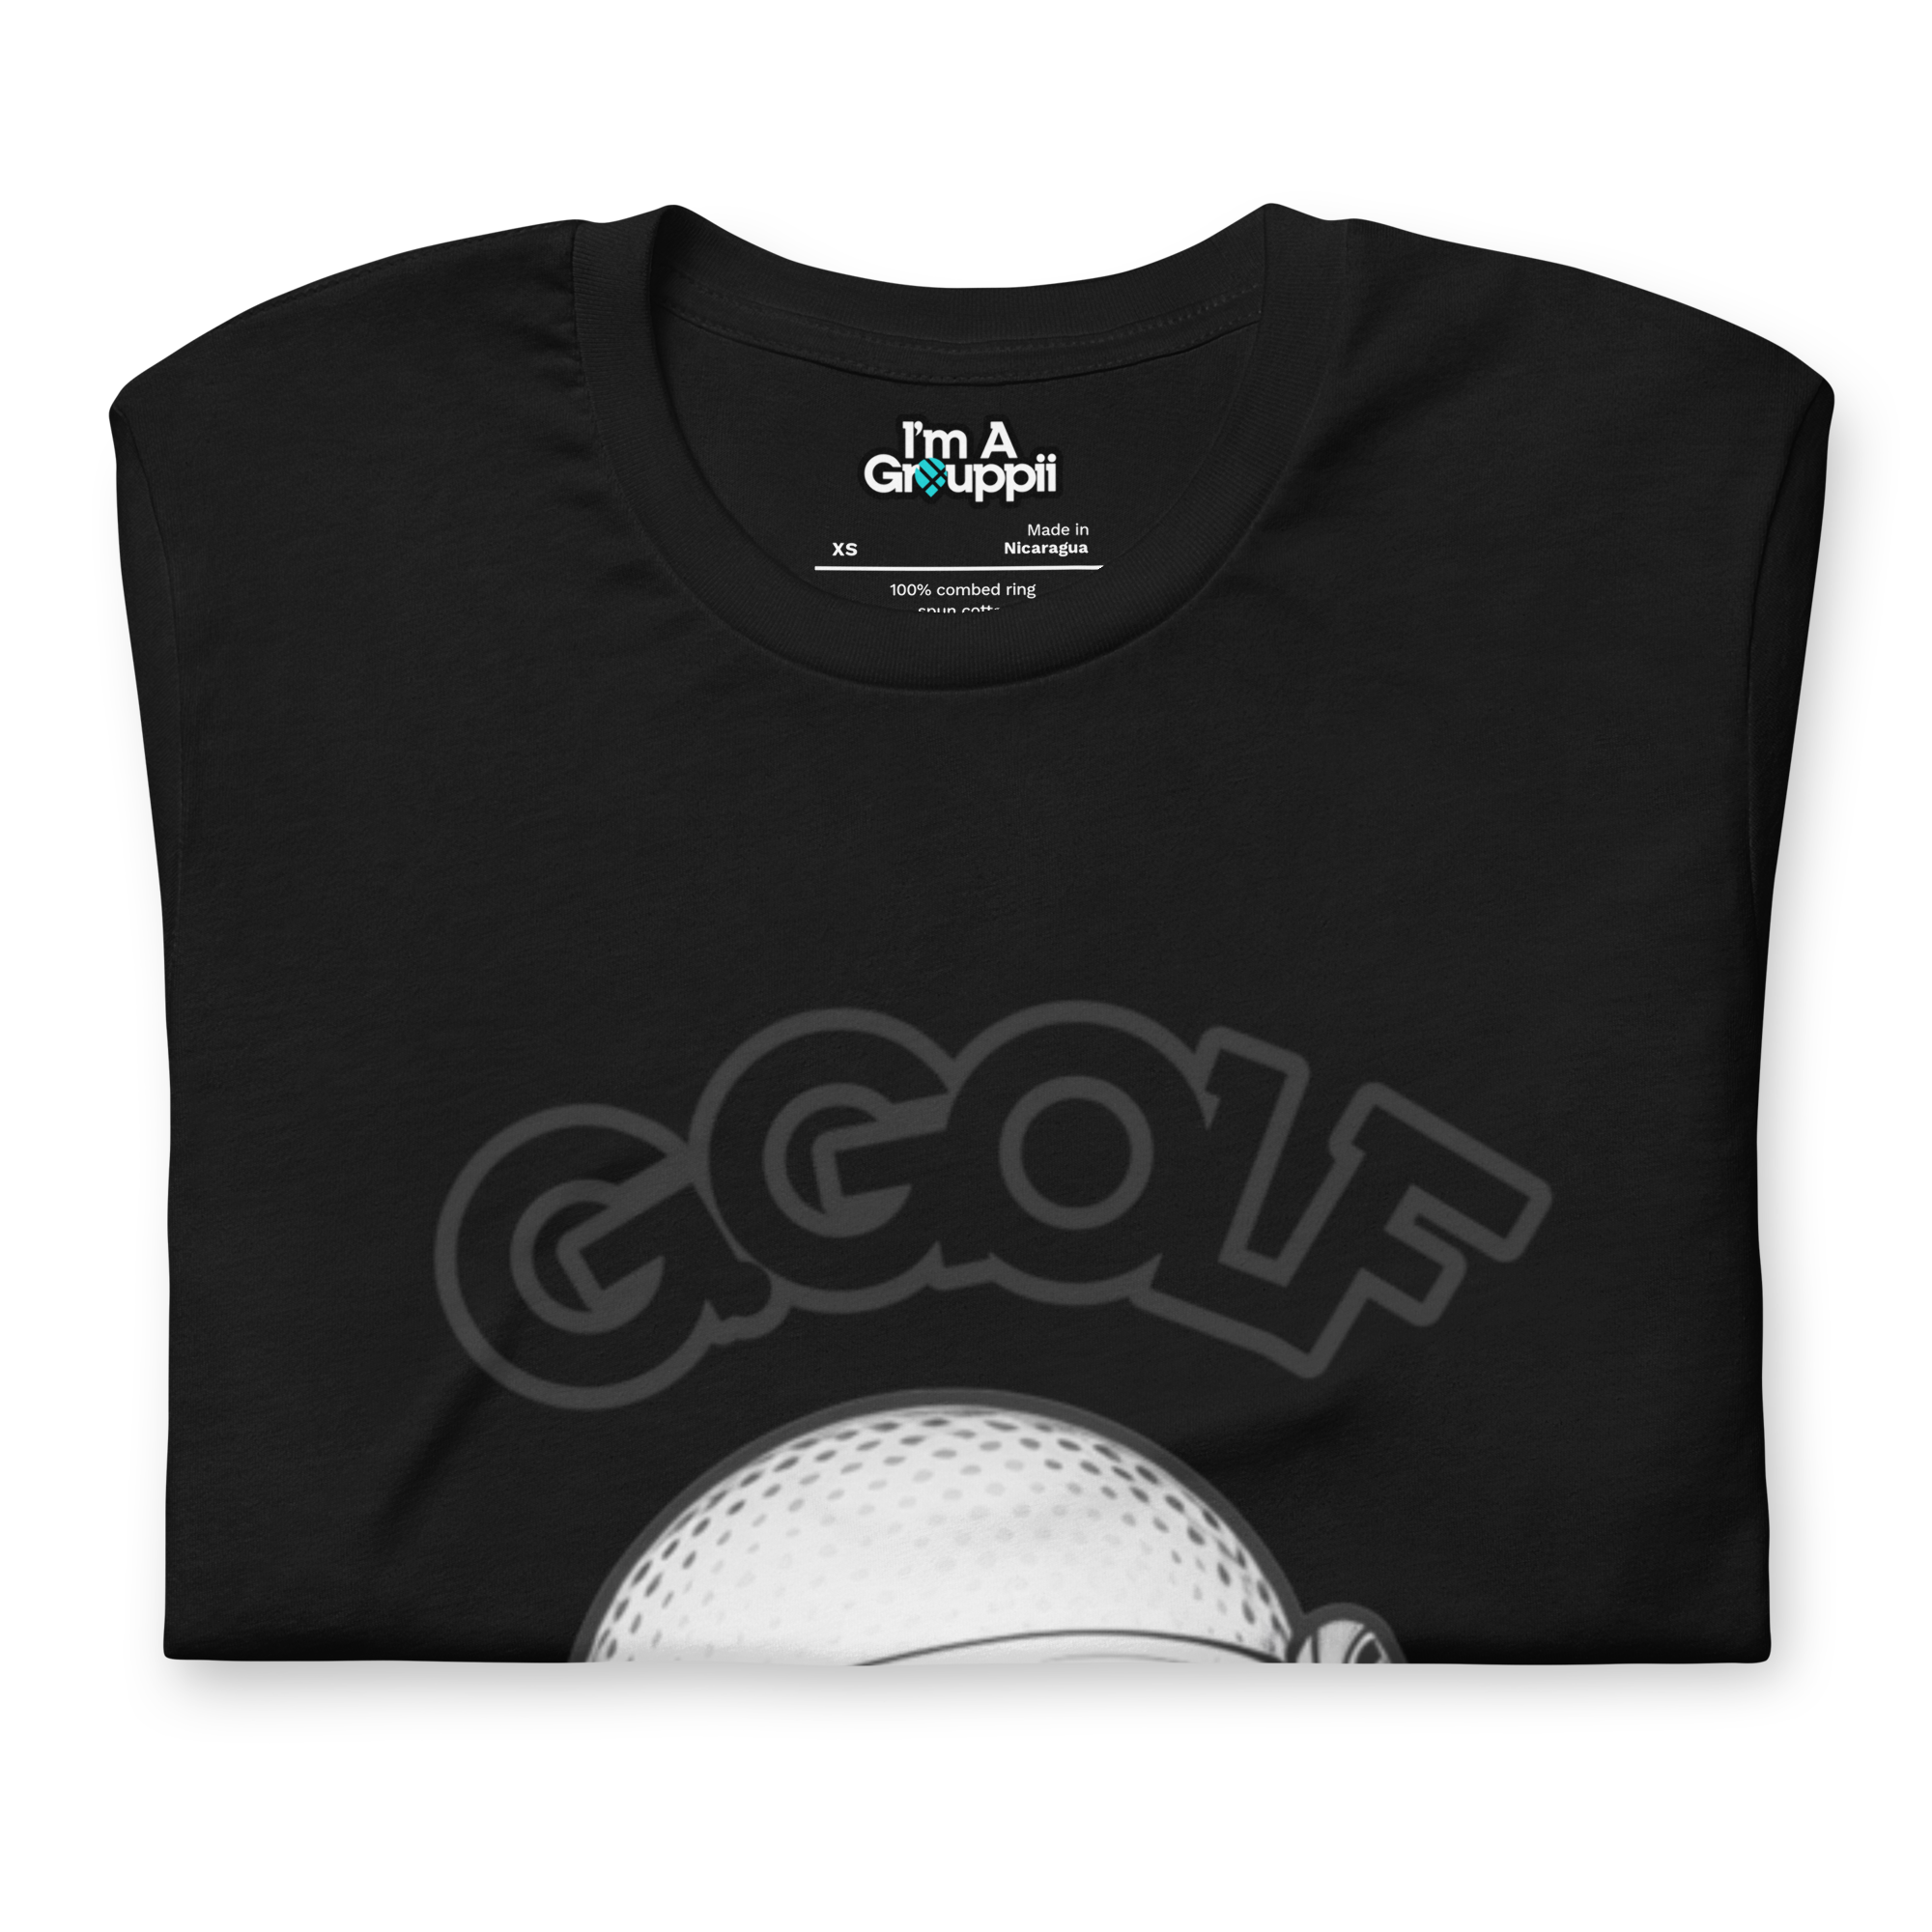 Mr. G.Golf Ball Tee